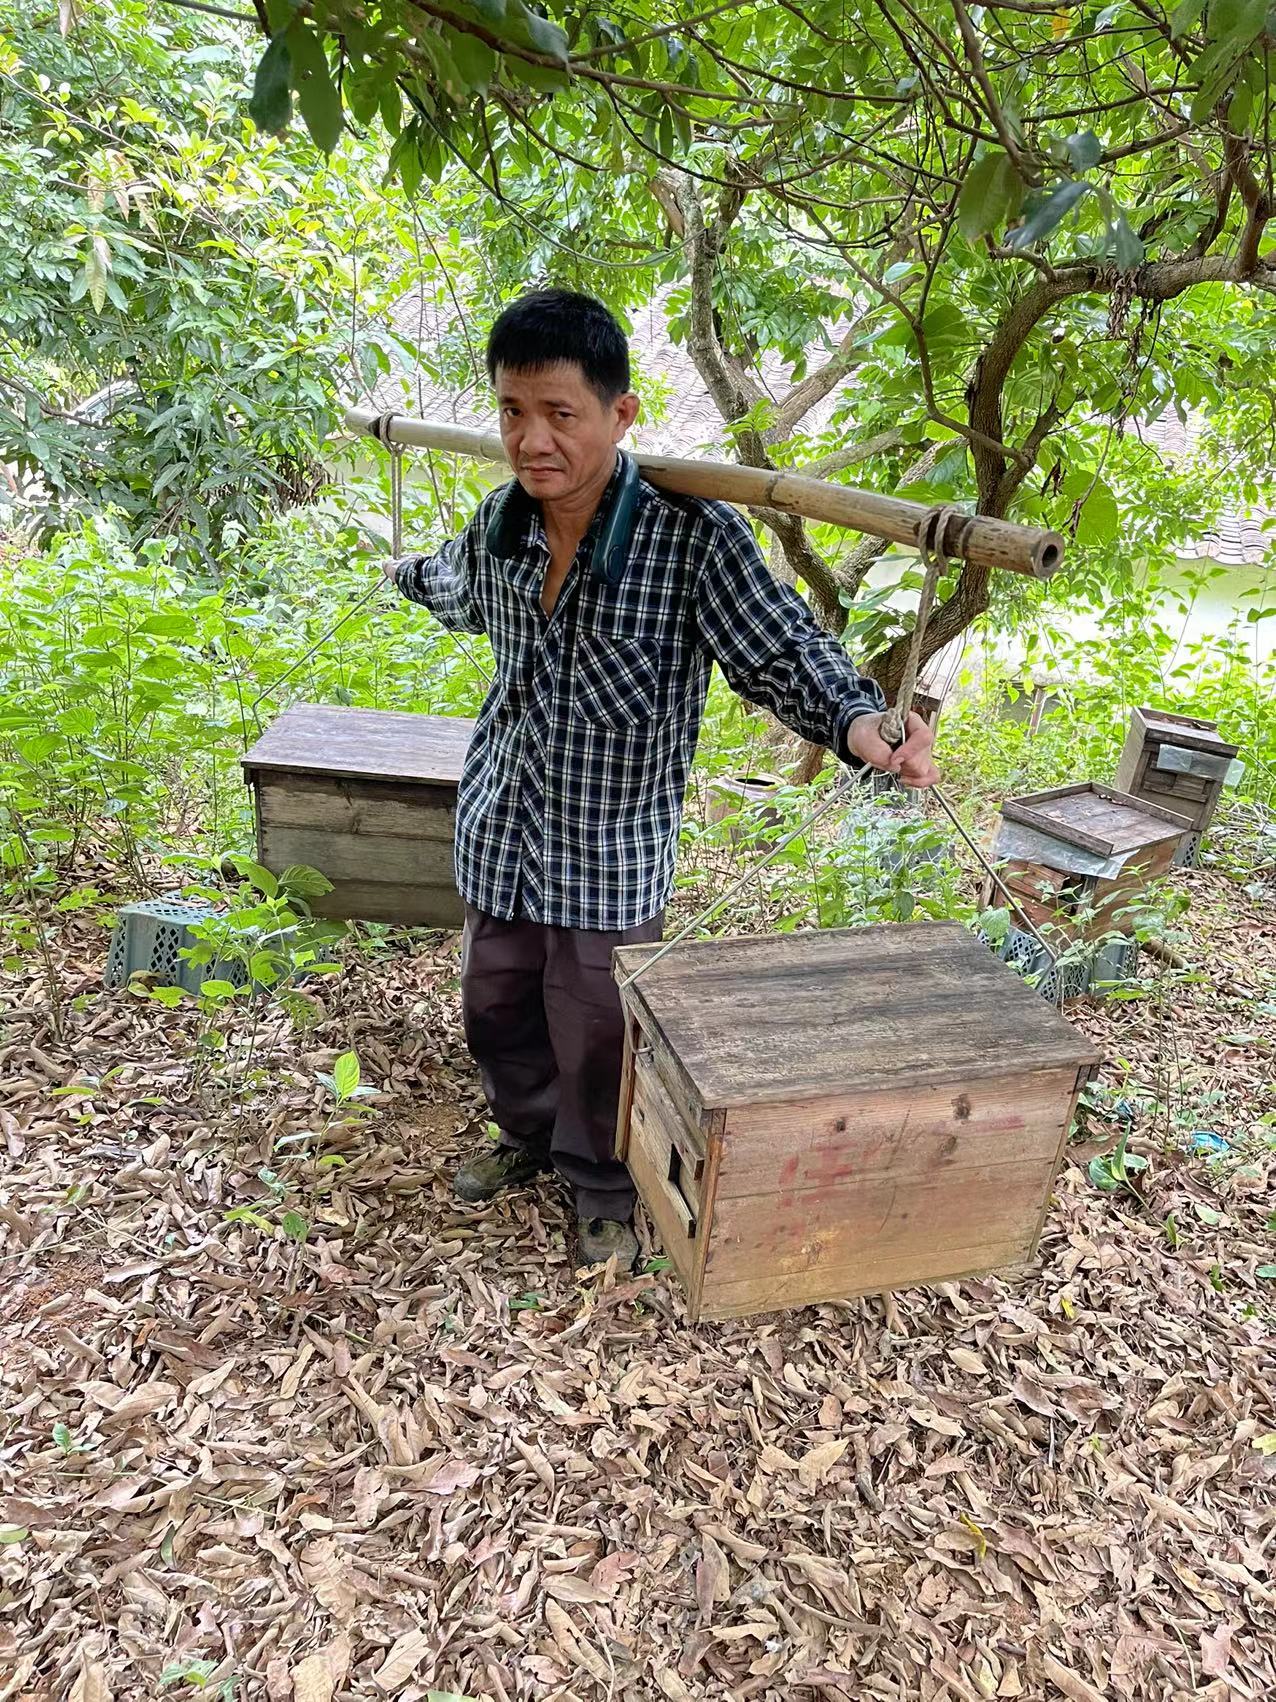 思远蜂业养蜂专用便携转场工具不锈钢挑蜂箱夹子 畜牧/养殖物资 养殖用具 原图主图